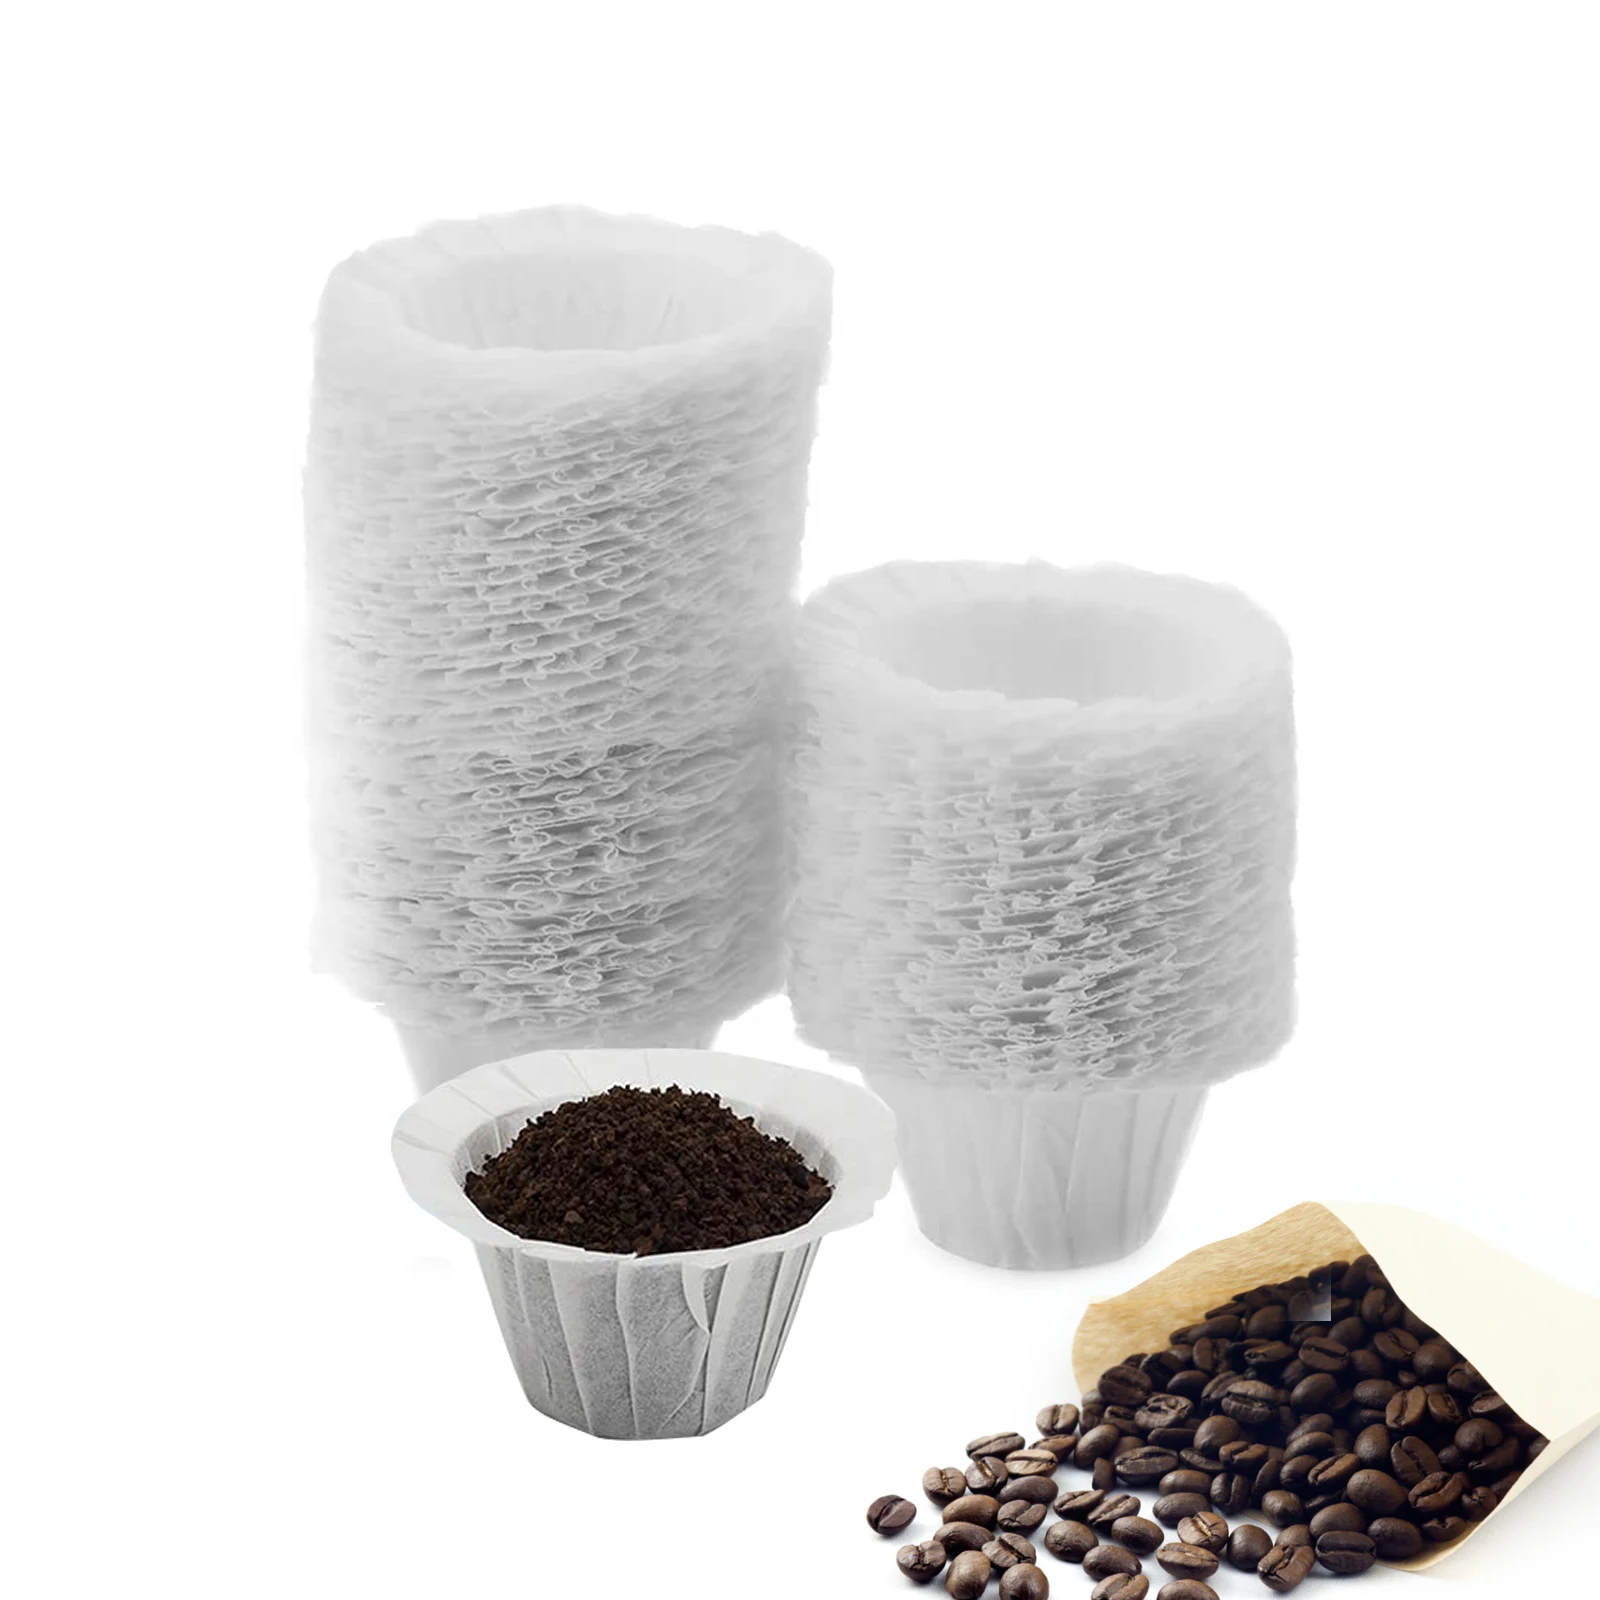 

Одноразовые бумажные фильтры для кофе, для одного сервиса, 1,0/2,0, совместимы со всеми брендами фильтров K Cup (100 шт.) для кофемашины